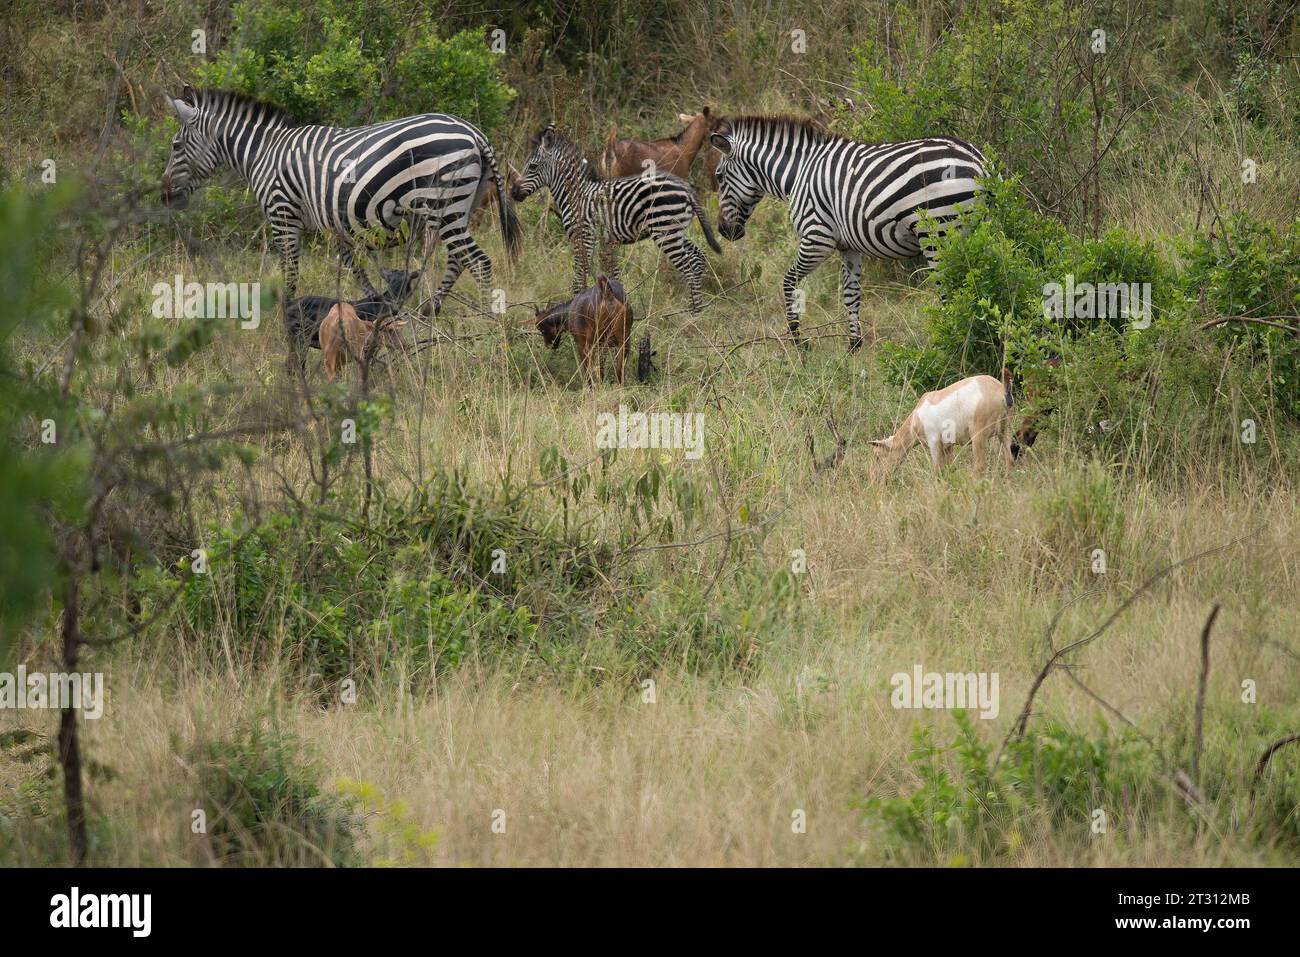 Lo Zebra può essere visto come una competizione con il bestiame domestico come le capre, un caso di basso livello di conflitto tra uomo e fauna selvatica che la conservazione deve affrontare. Foto Stock